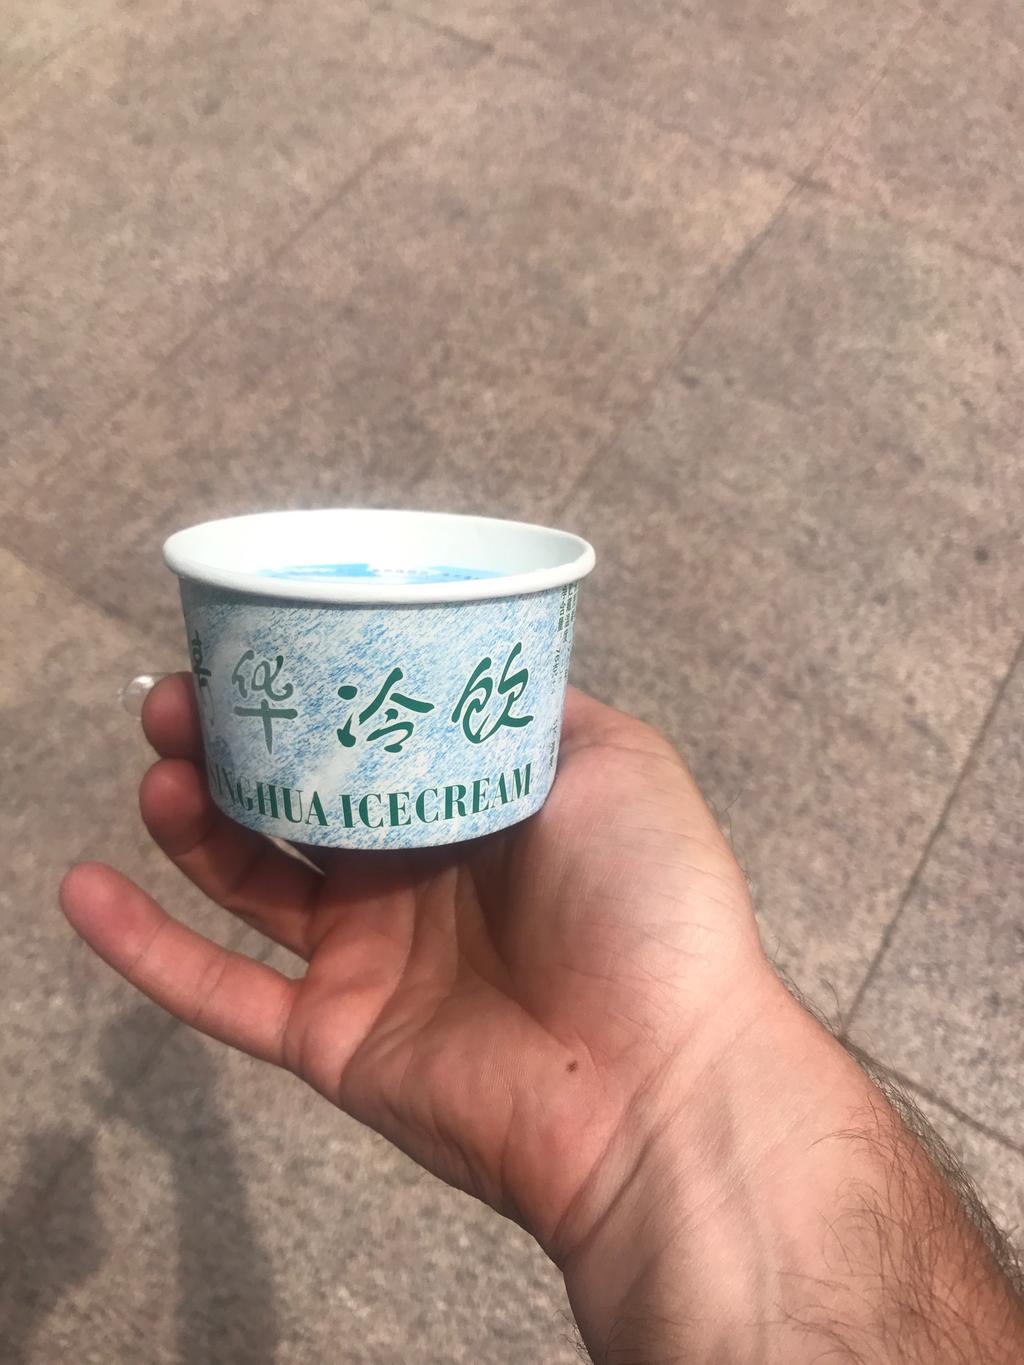 Tsinghua has its own ice cream!